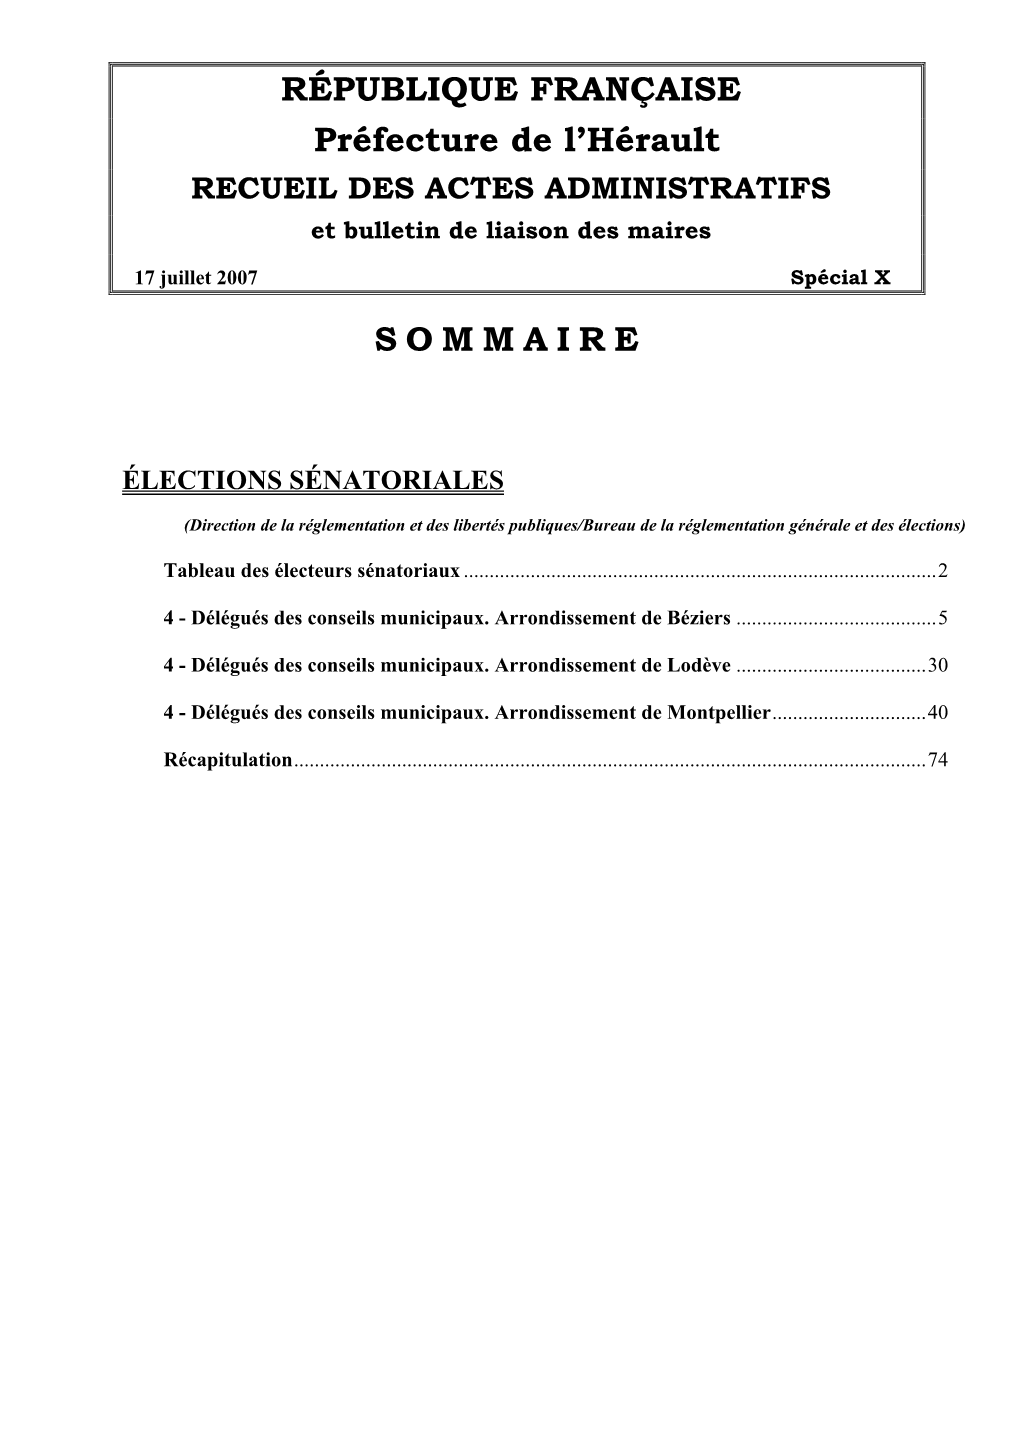 RECUEIL DES ACTES ADMINISTRATIFS Et Bulletin De Liaison Des Maires